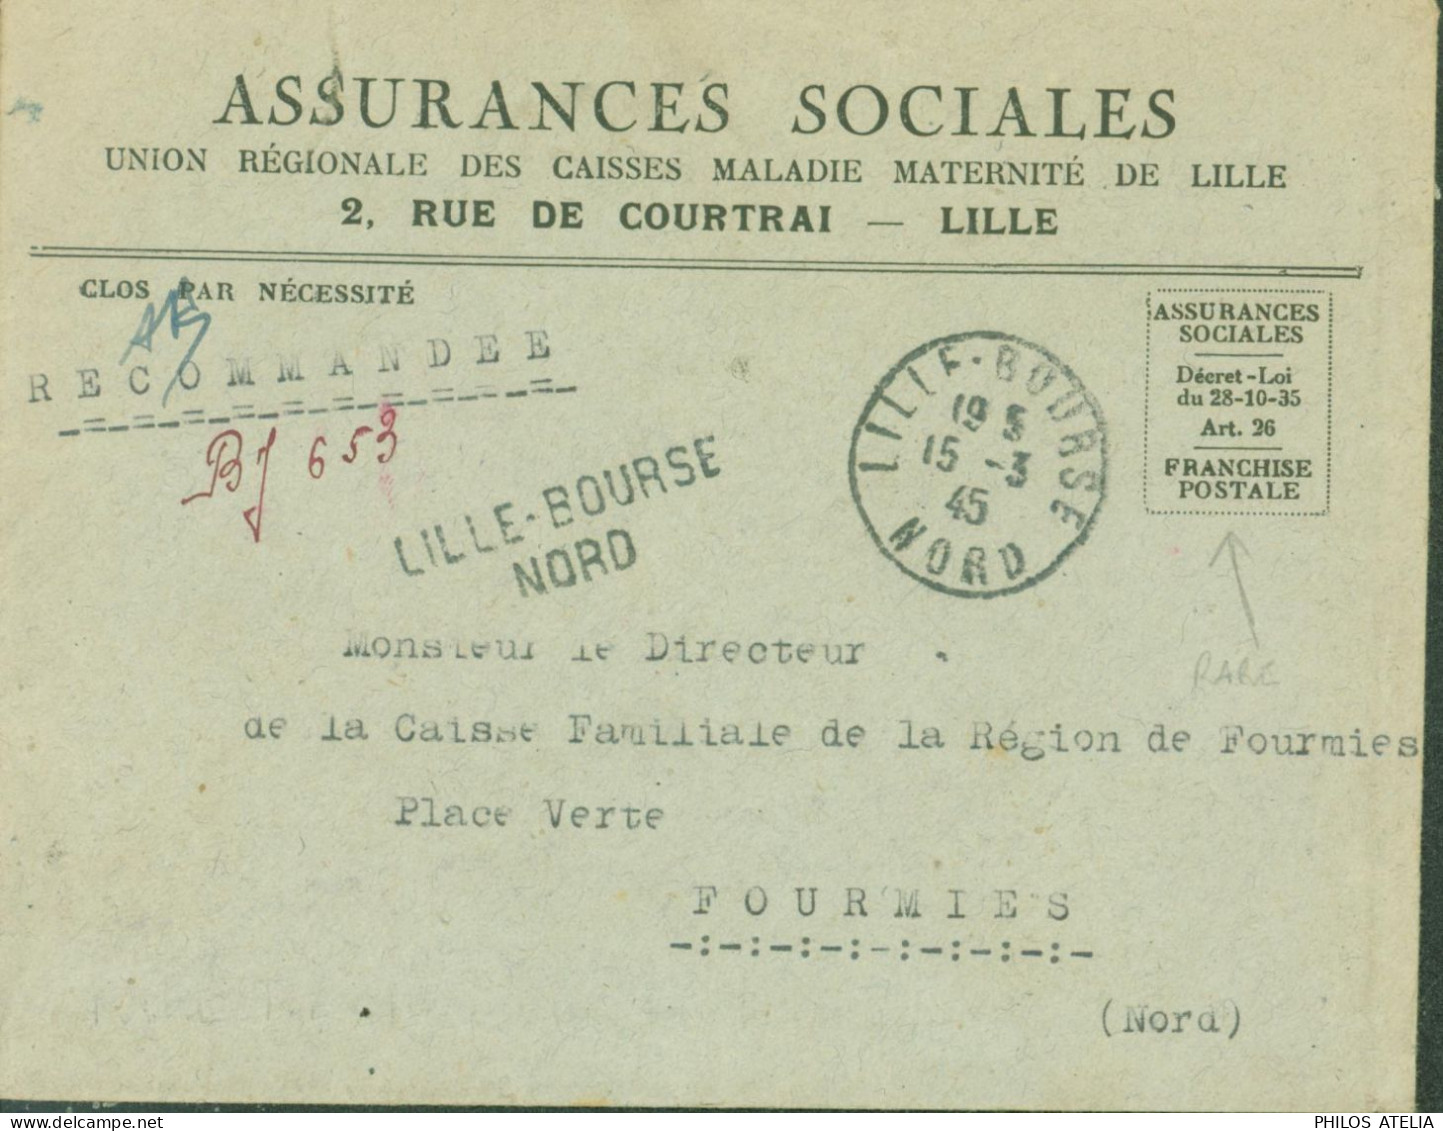 Guerre 40 Recommandé De Fortune BJ 653 Lille Bourse Nord Avec Franchise Postale Assurances Sociales CAD 15 3 45 - Oorlog 1939-45